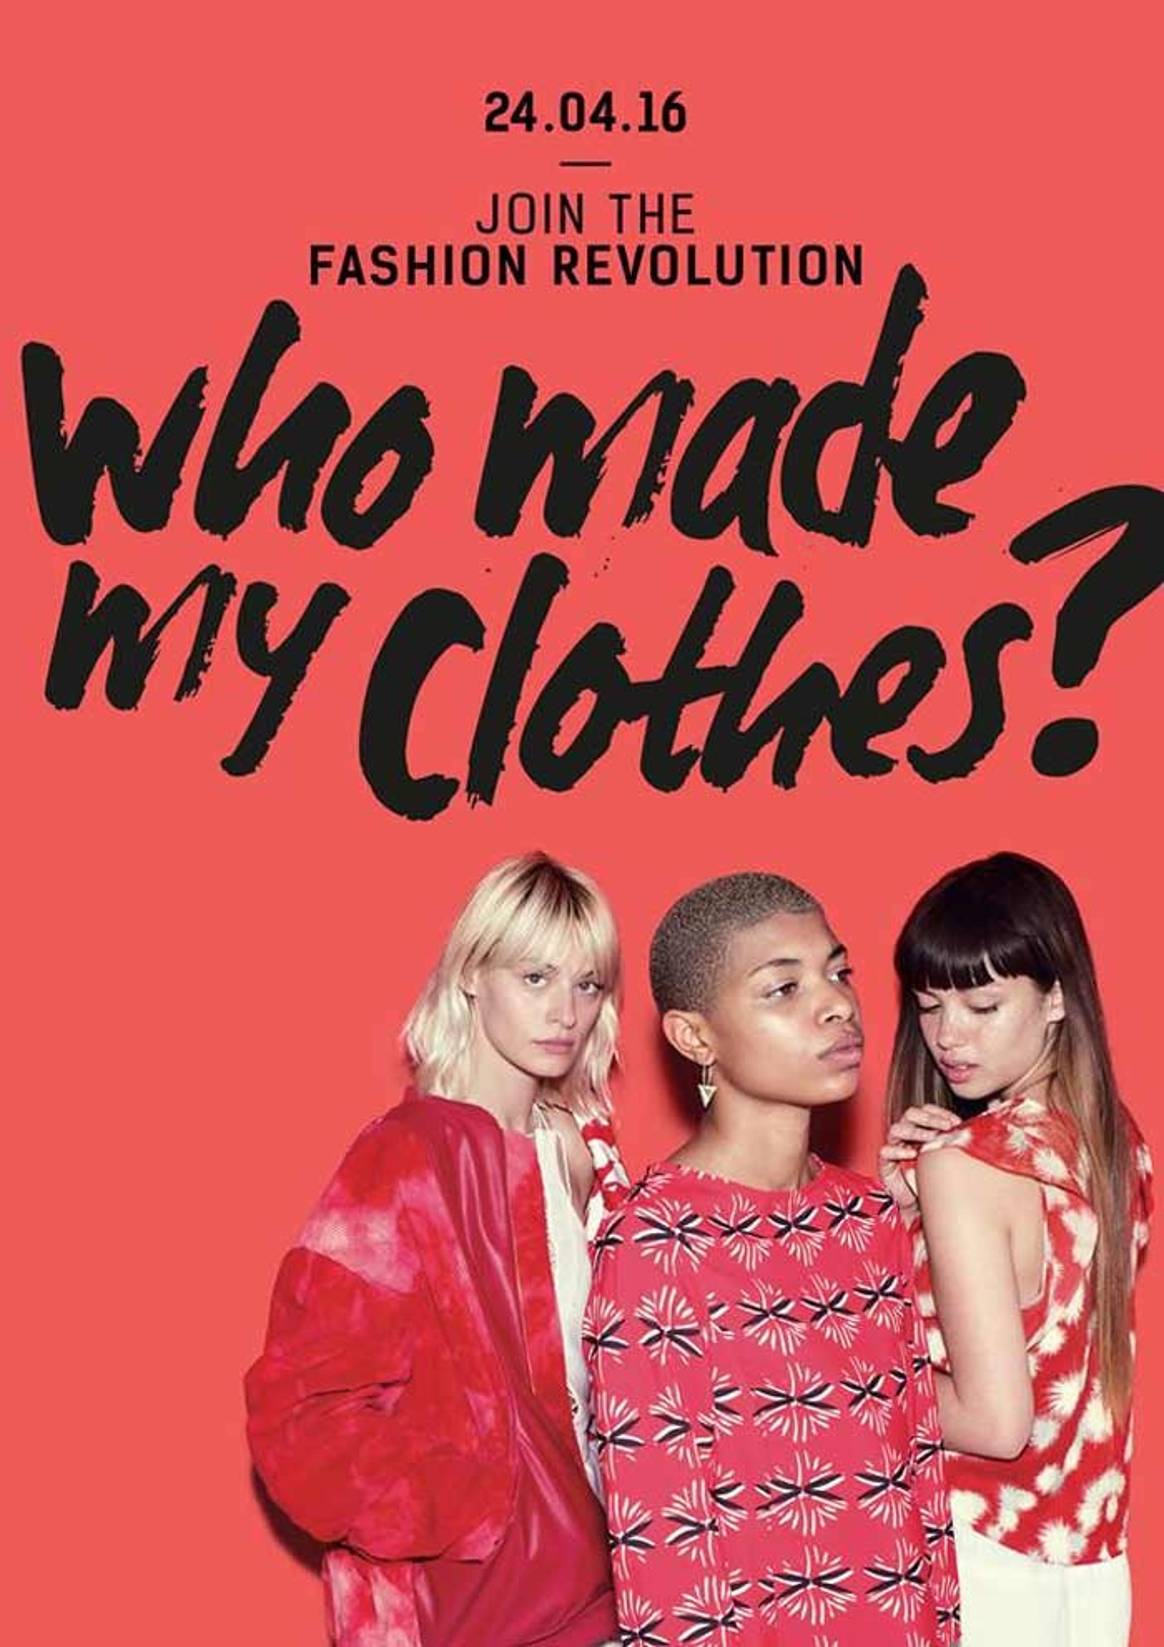 Fashion Revolution: luchando por una moda más justa